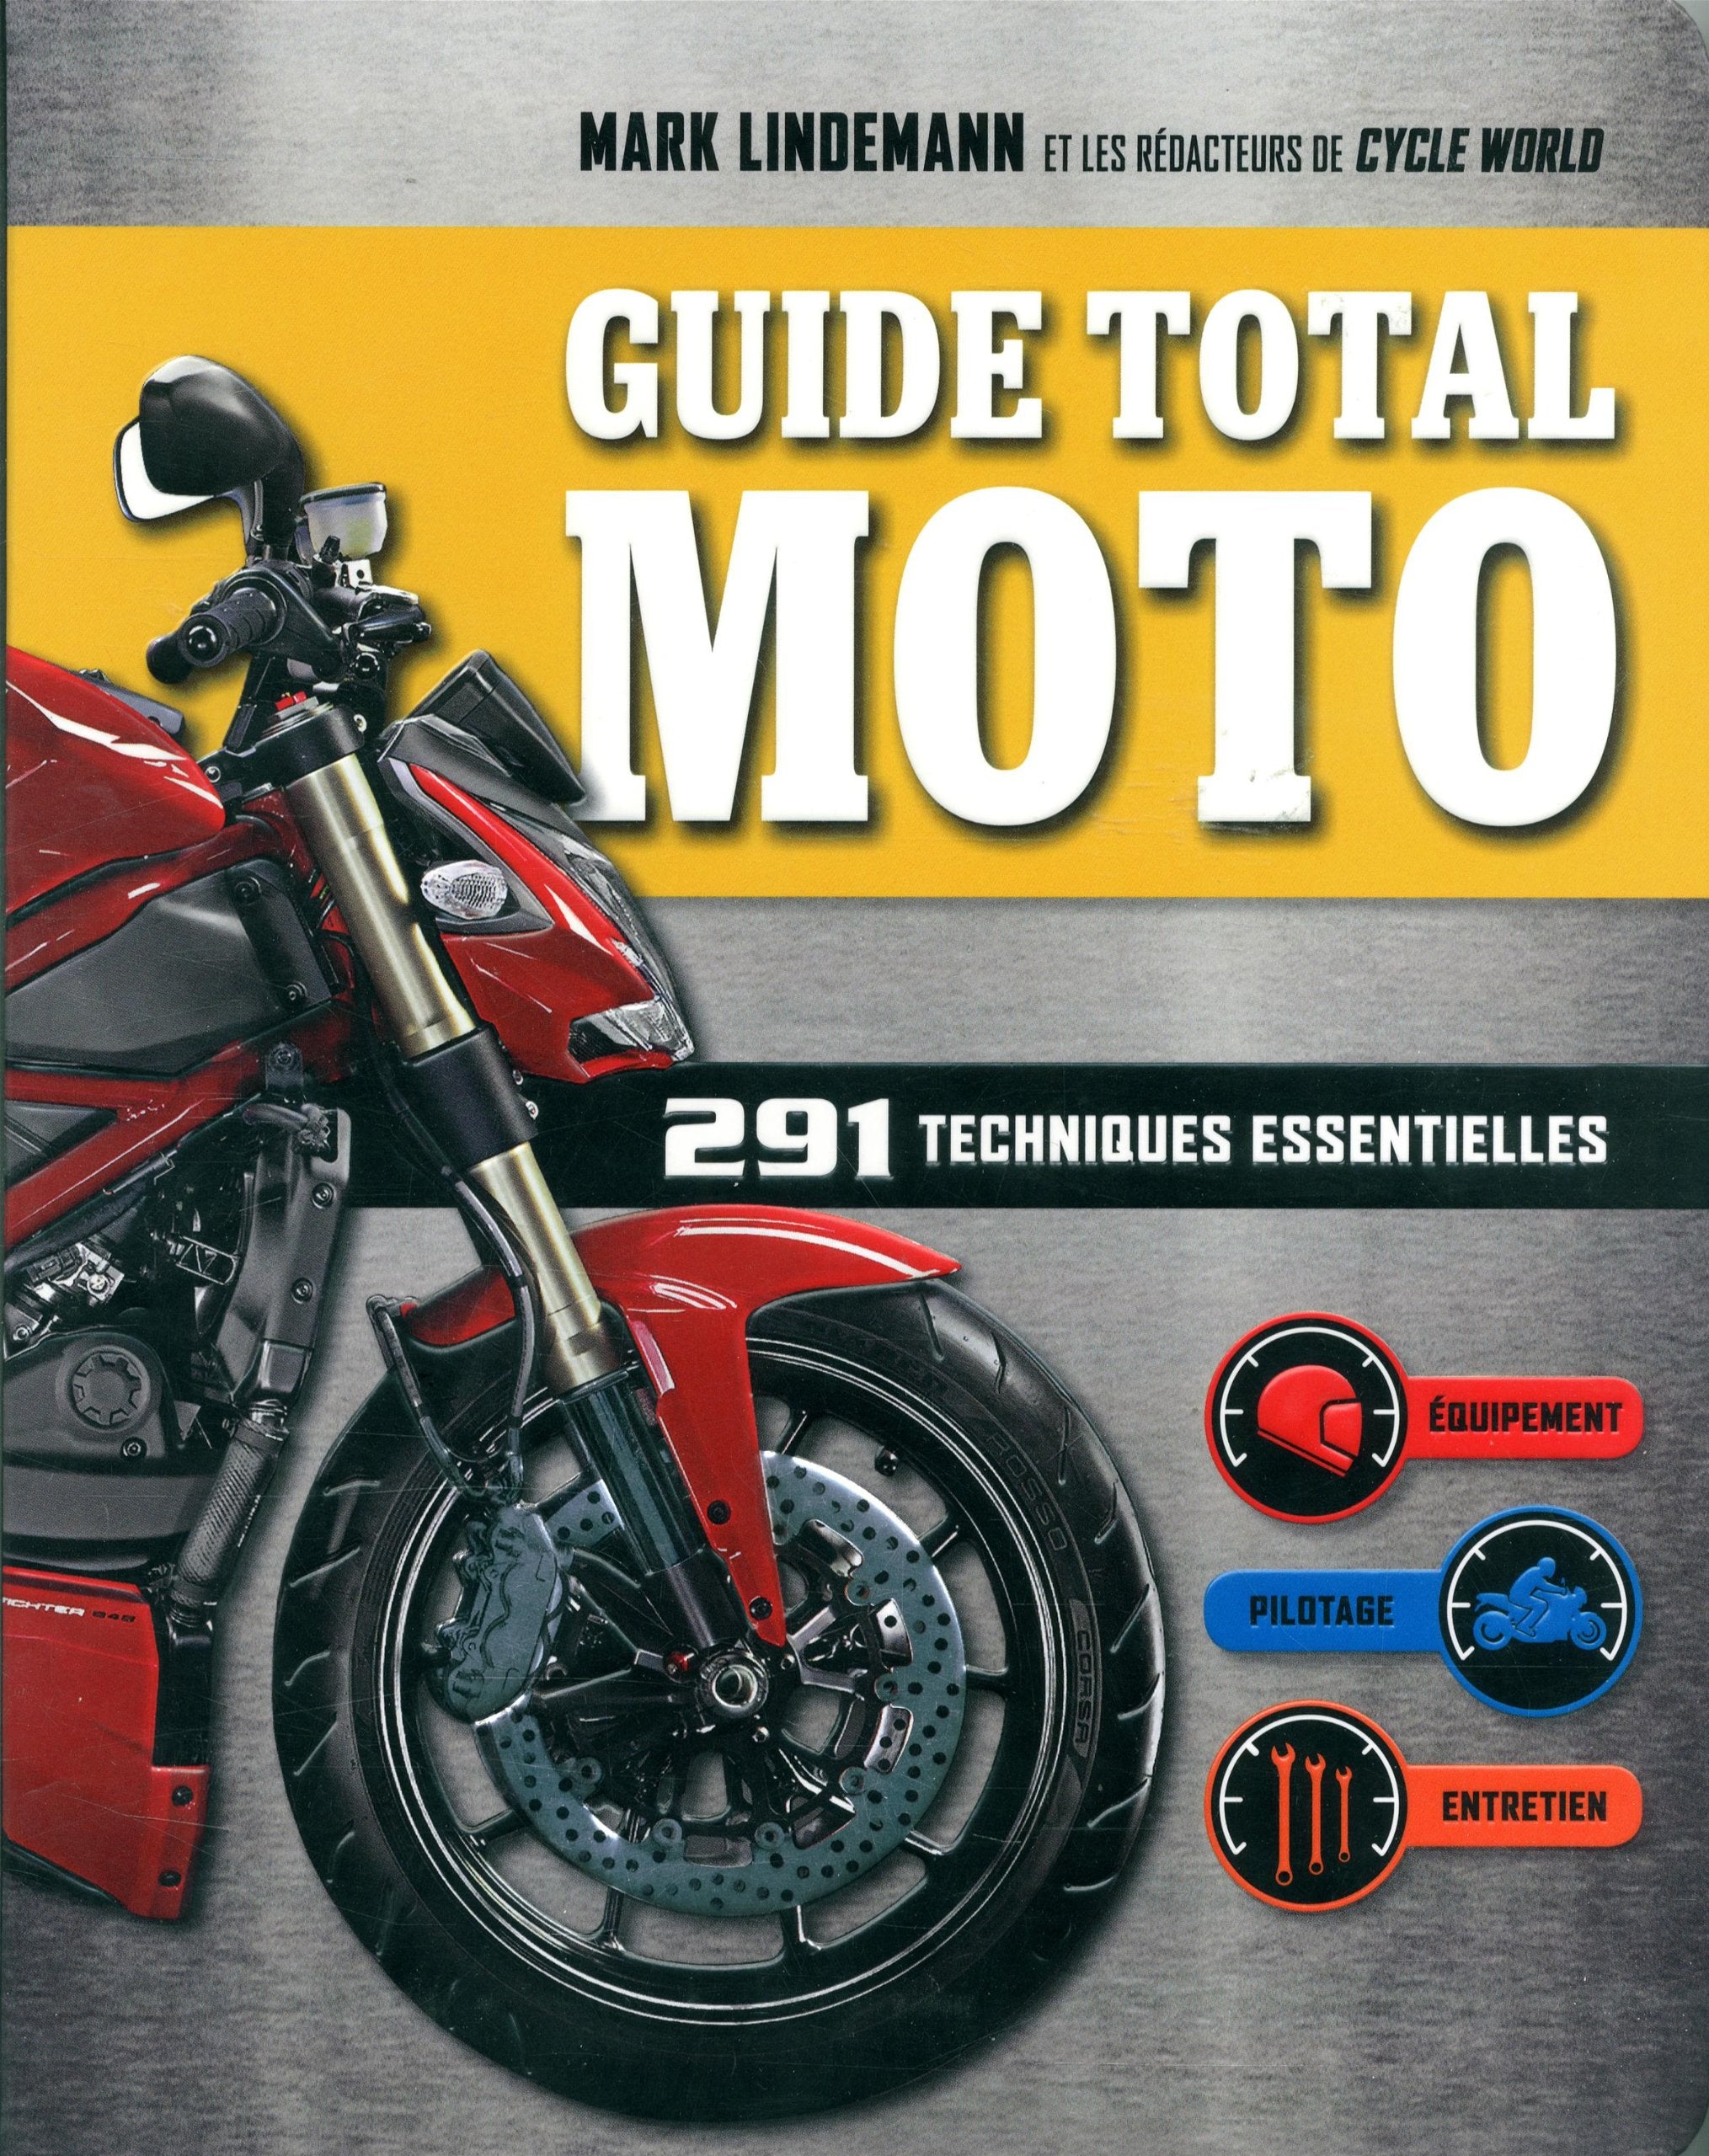 Guide total moto: 291 techniques essentielles - Mark Lindemann